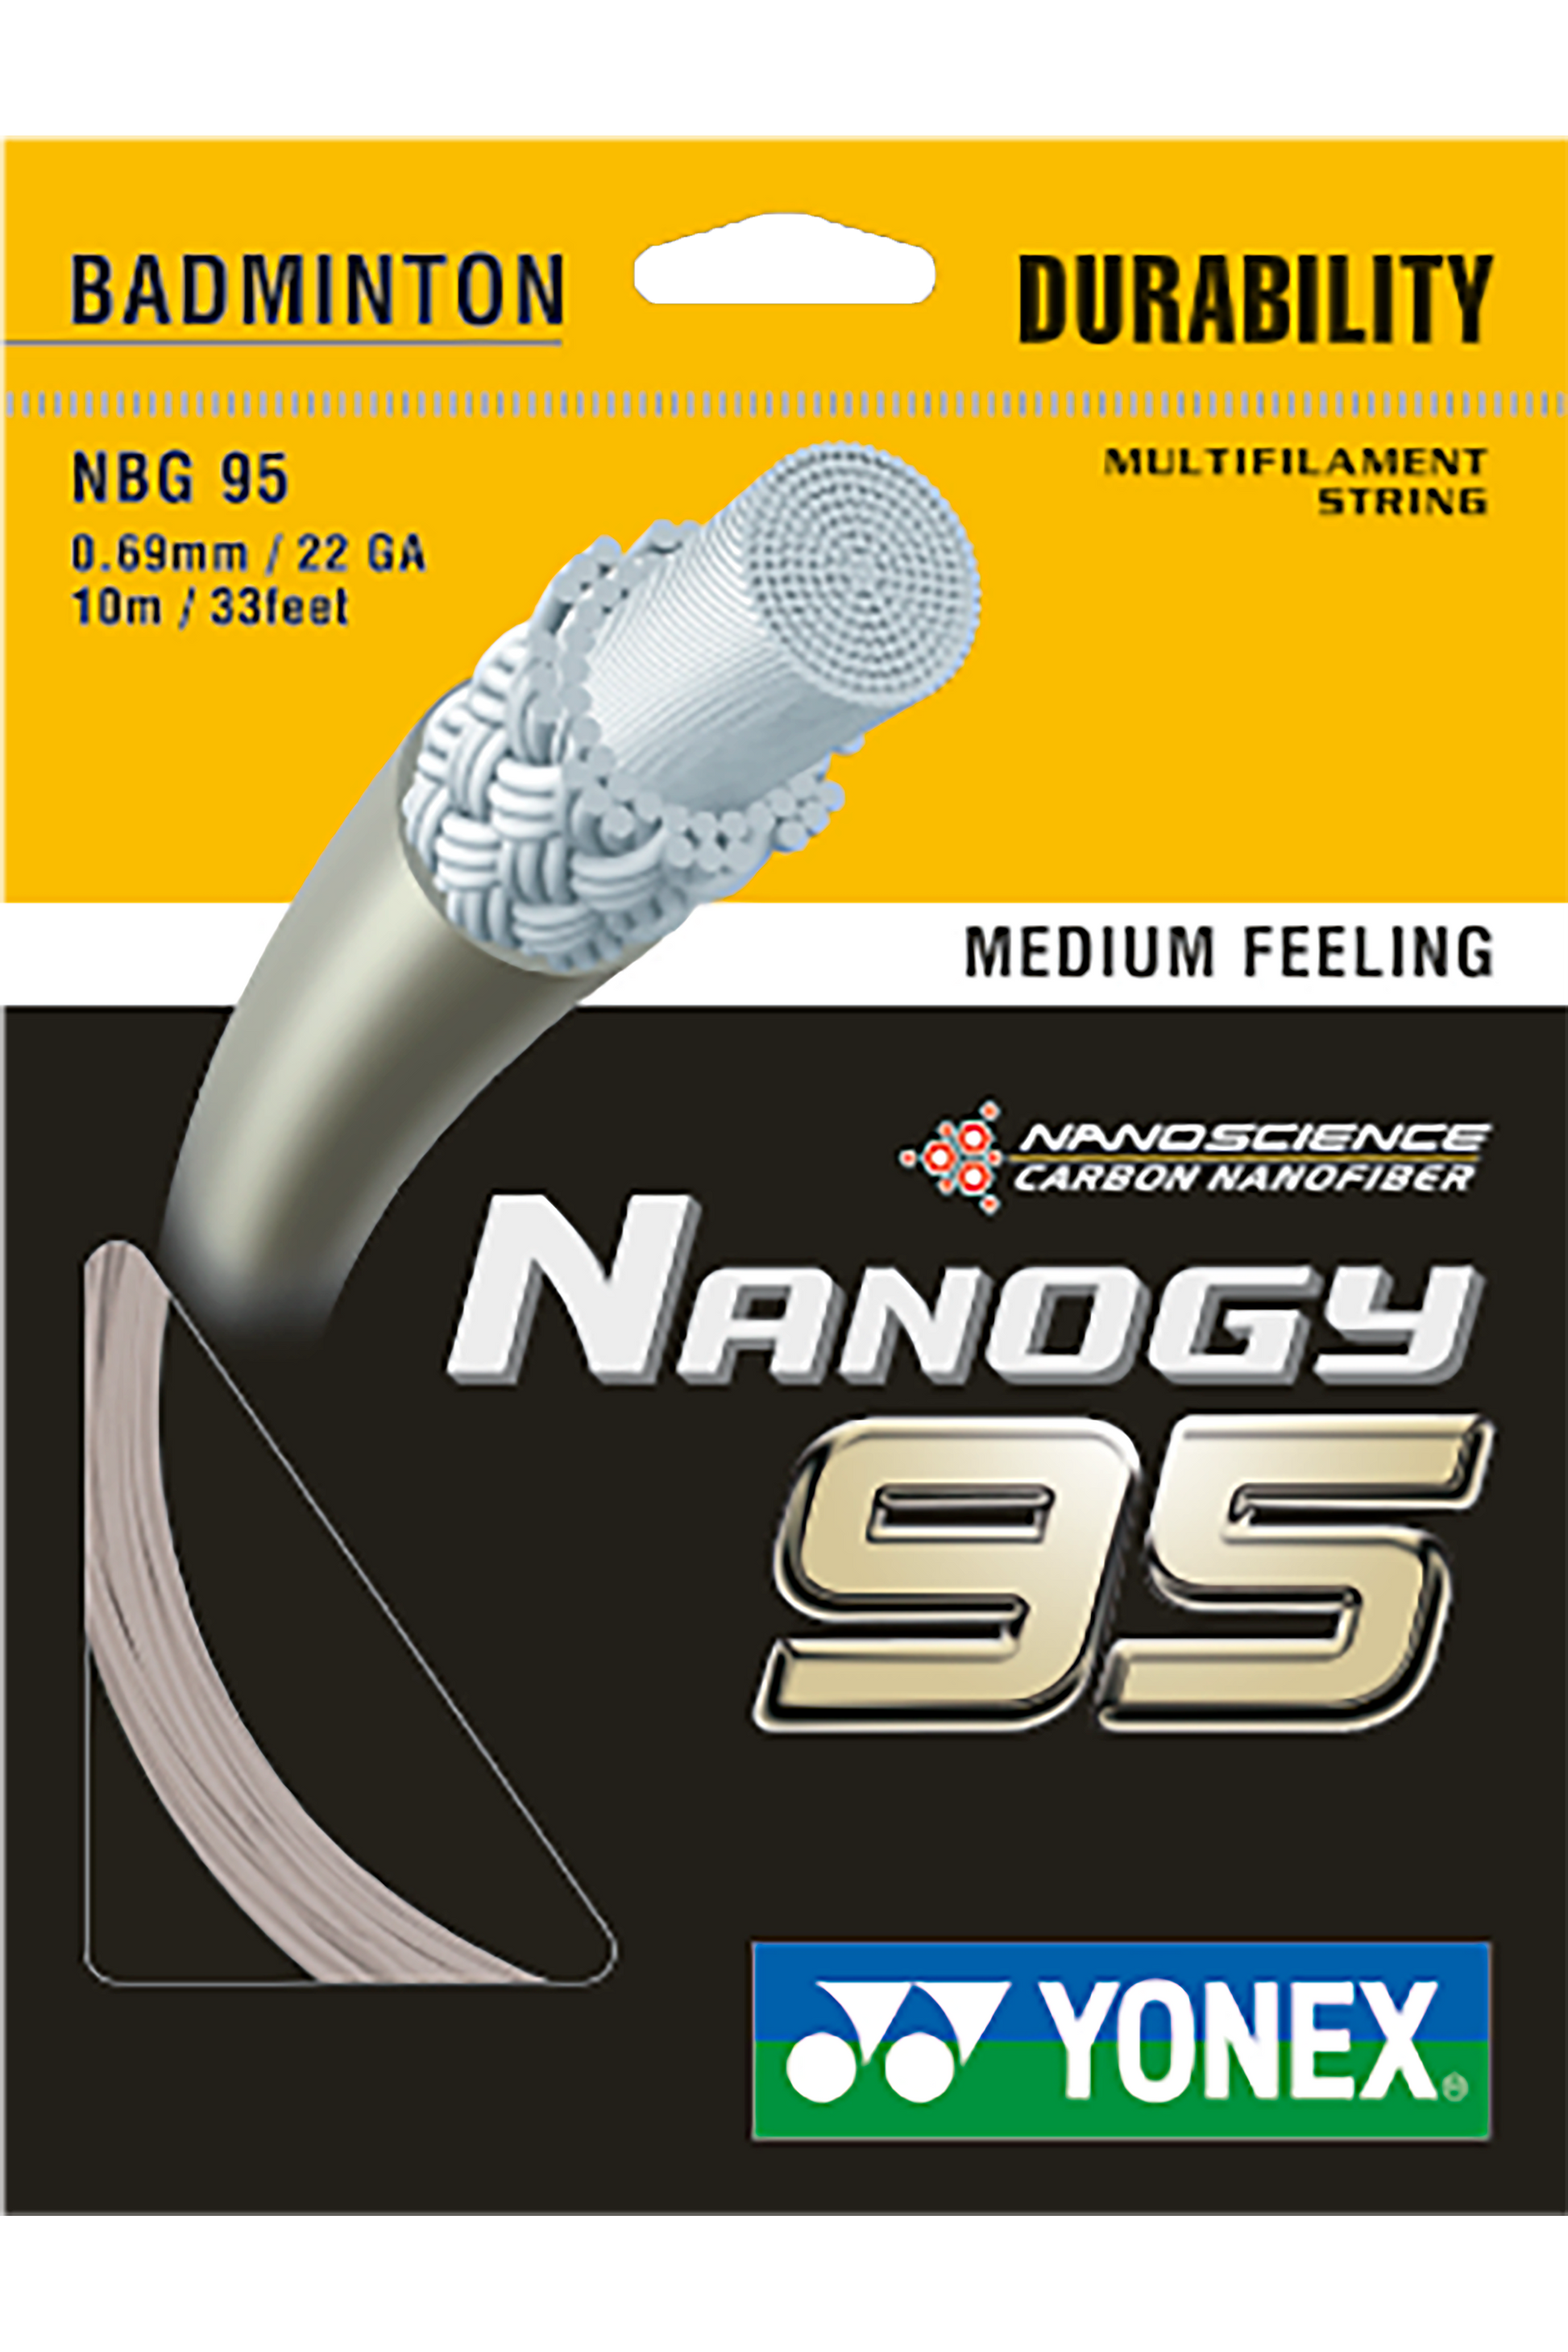 YONEX Badminton String NANOGY 95 - Max Sports